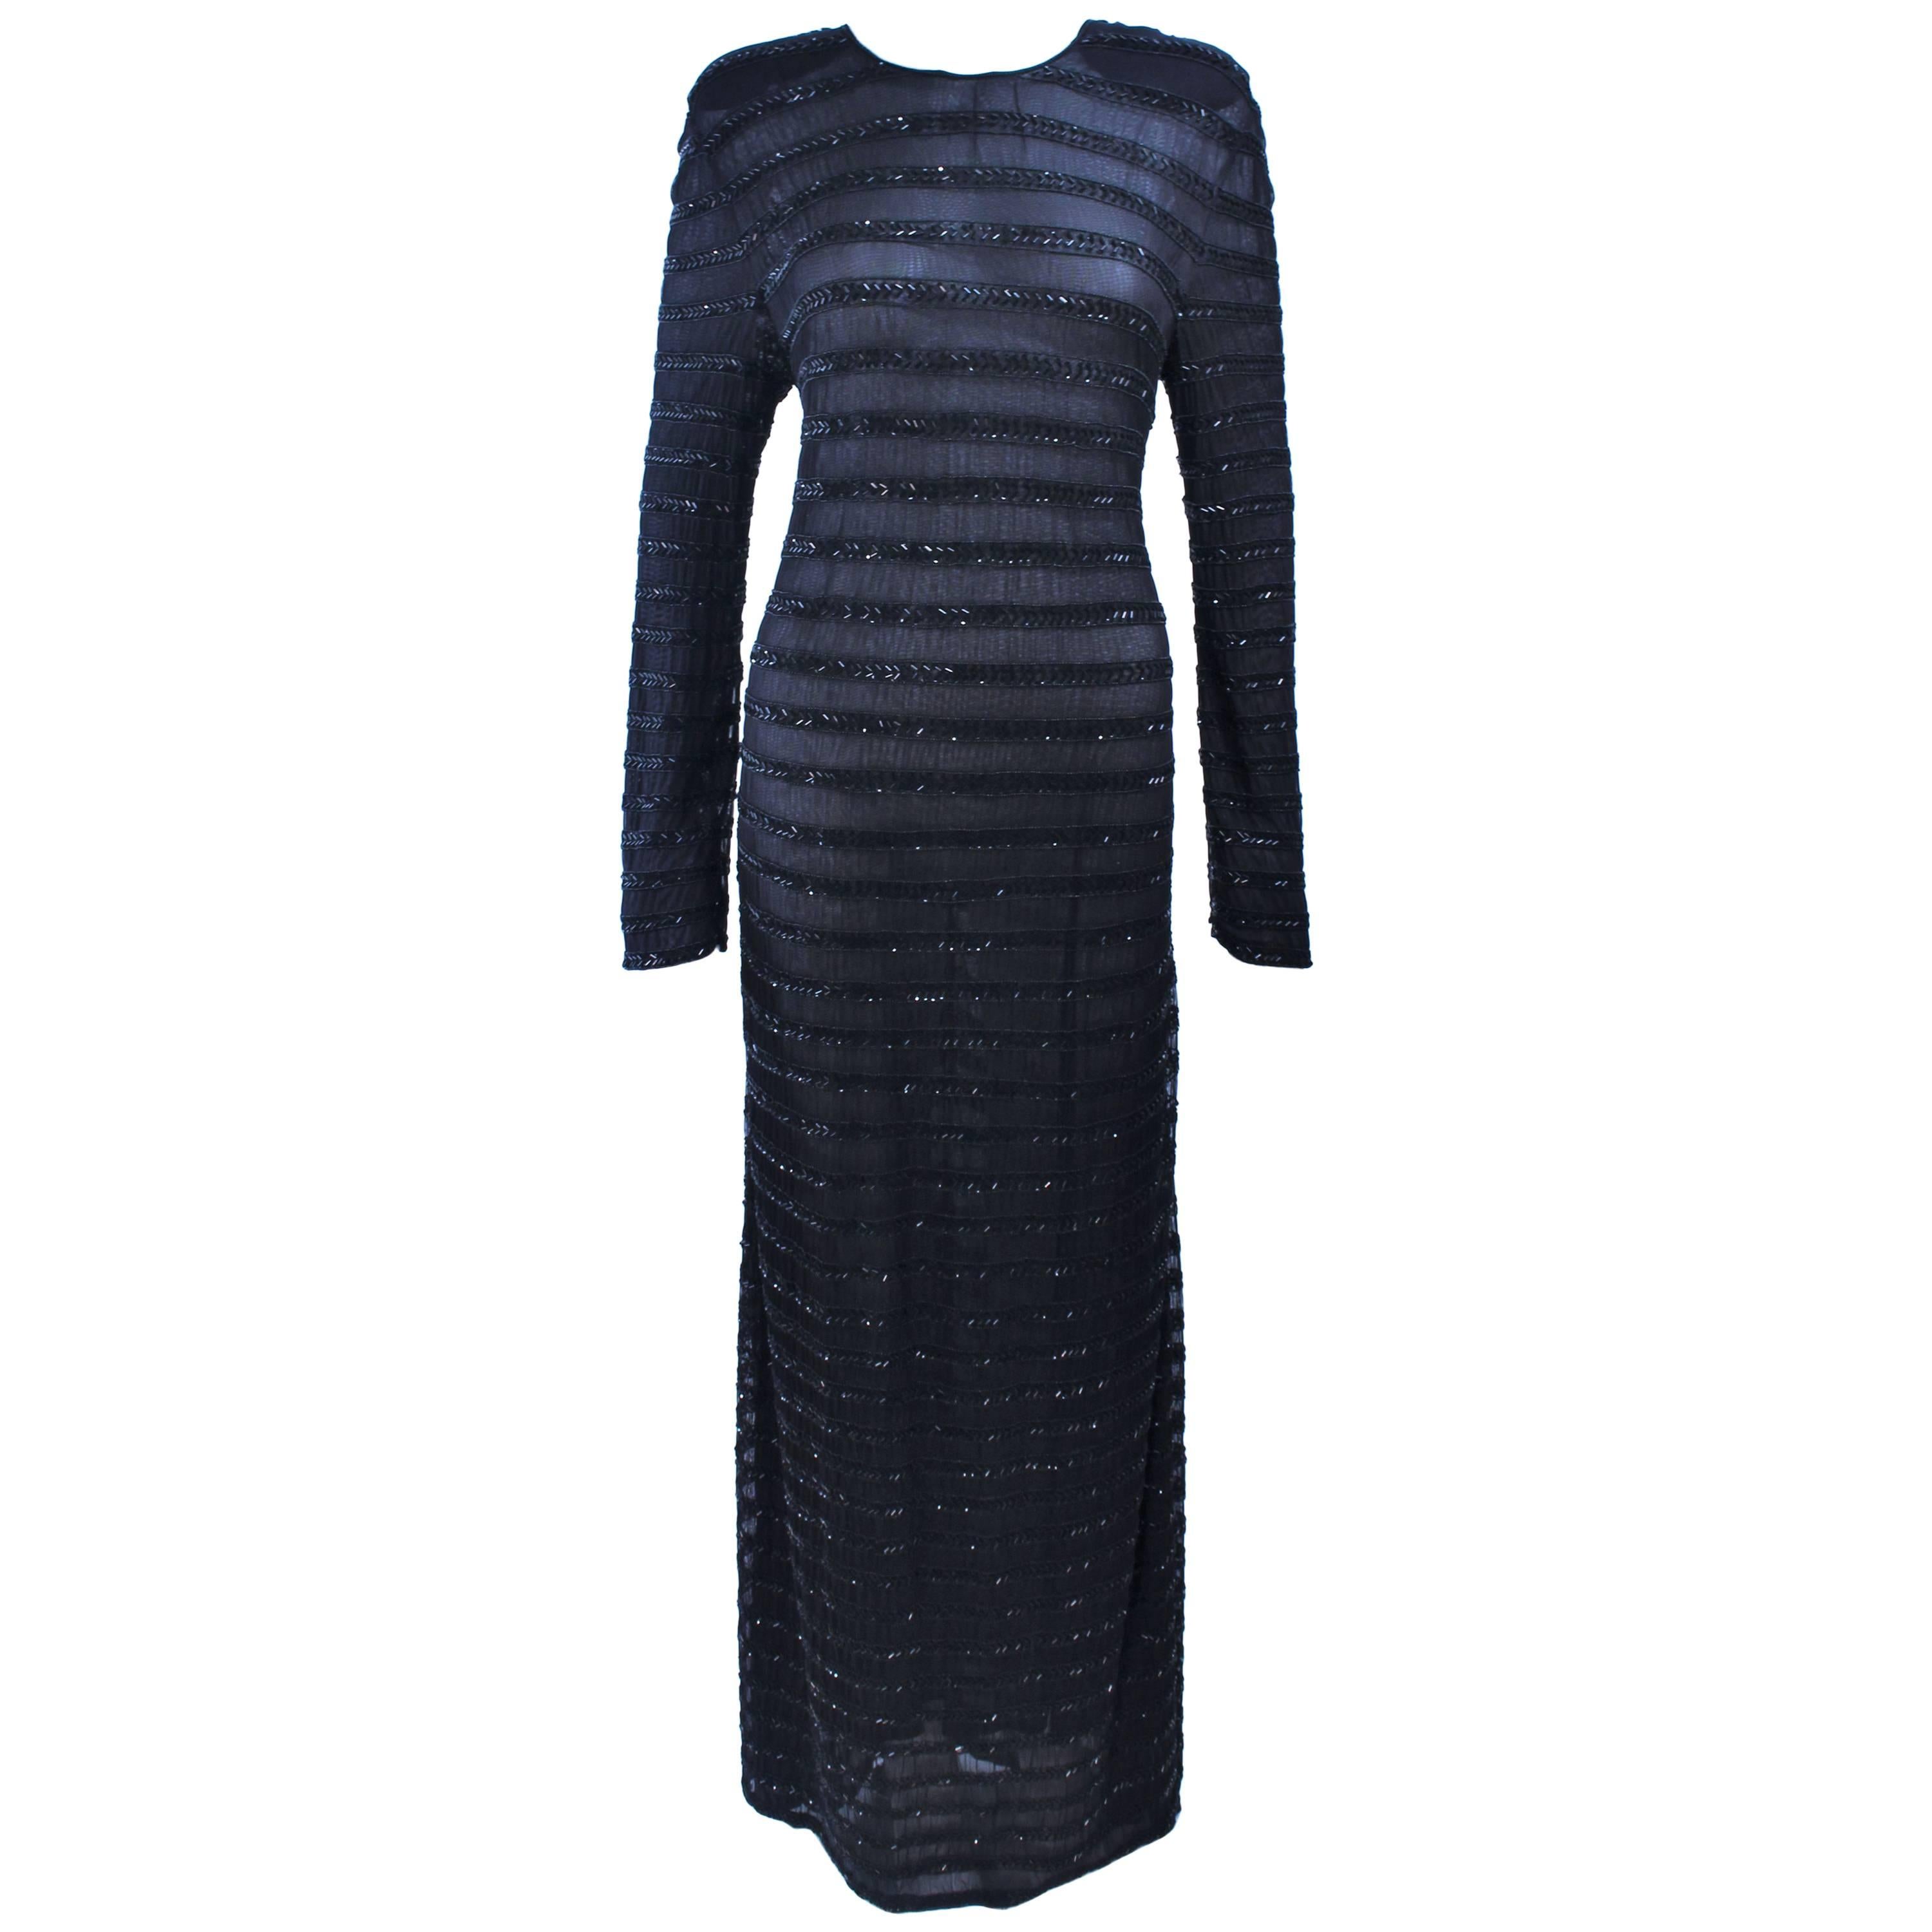 Giorgio Armani Black Label Silk Evening Dress, 1980s For Sale at